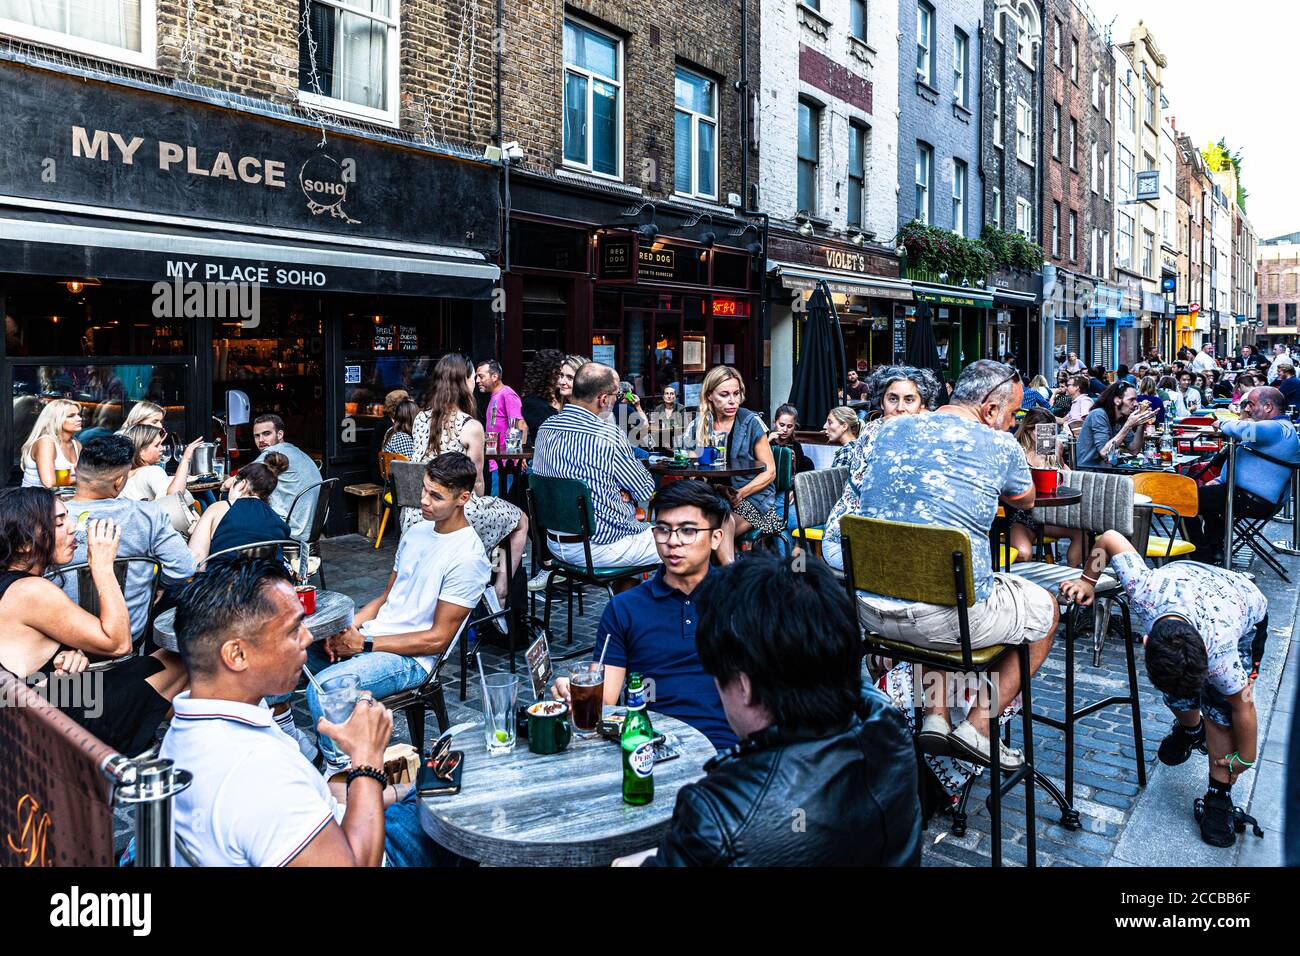 Les clients dînant en plein air dans une rue piétonne, Berwick Street, Soho, Londres, Royaume-Uni. Banque D'Images